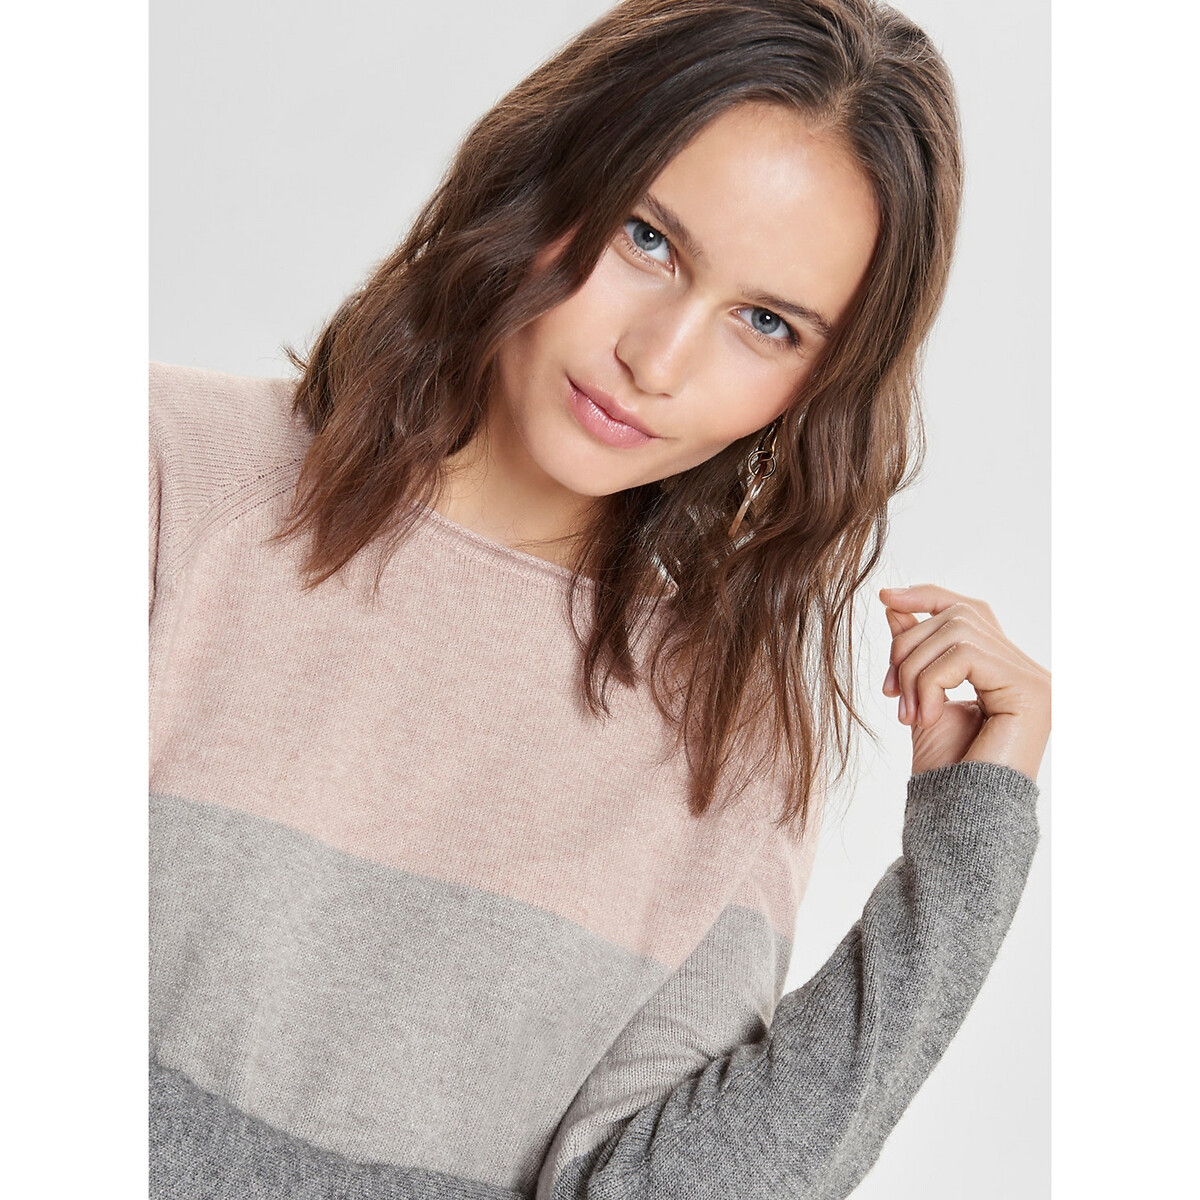 Платье-пуловер La Redoute Трехцветное из плотного трикотажа M розовый, размер M - фото 4